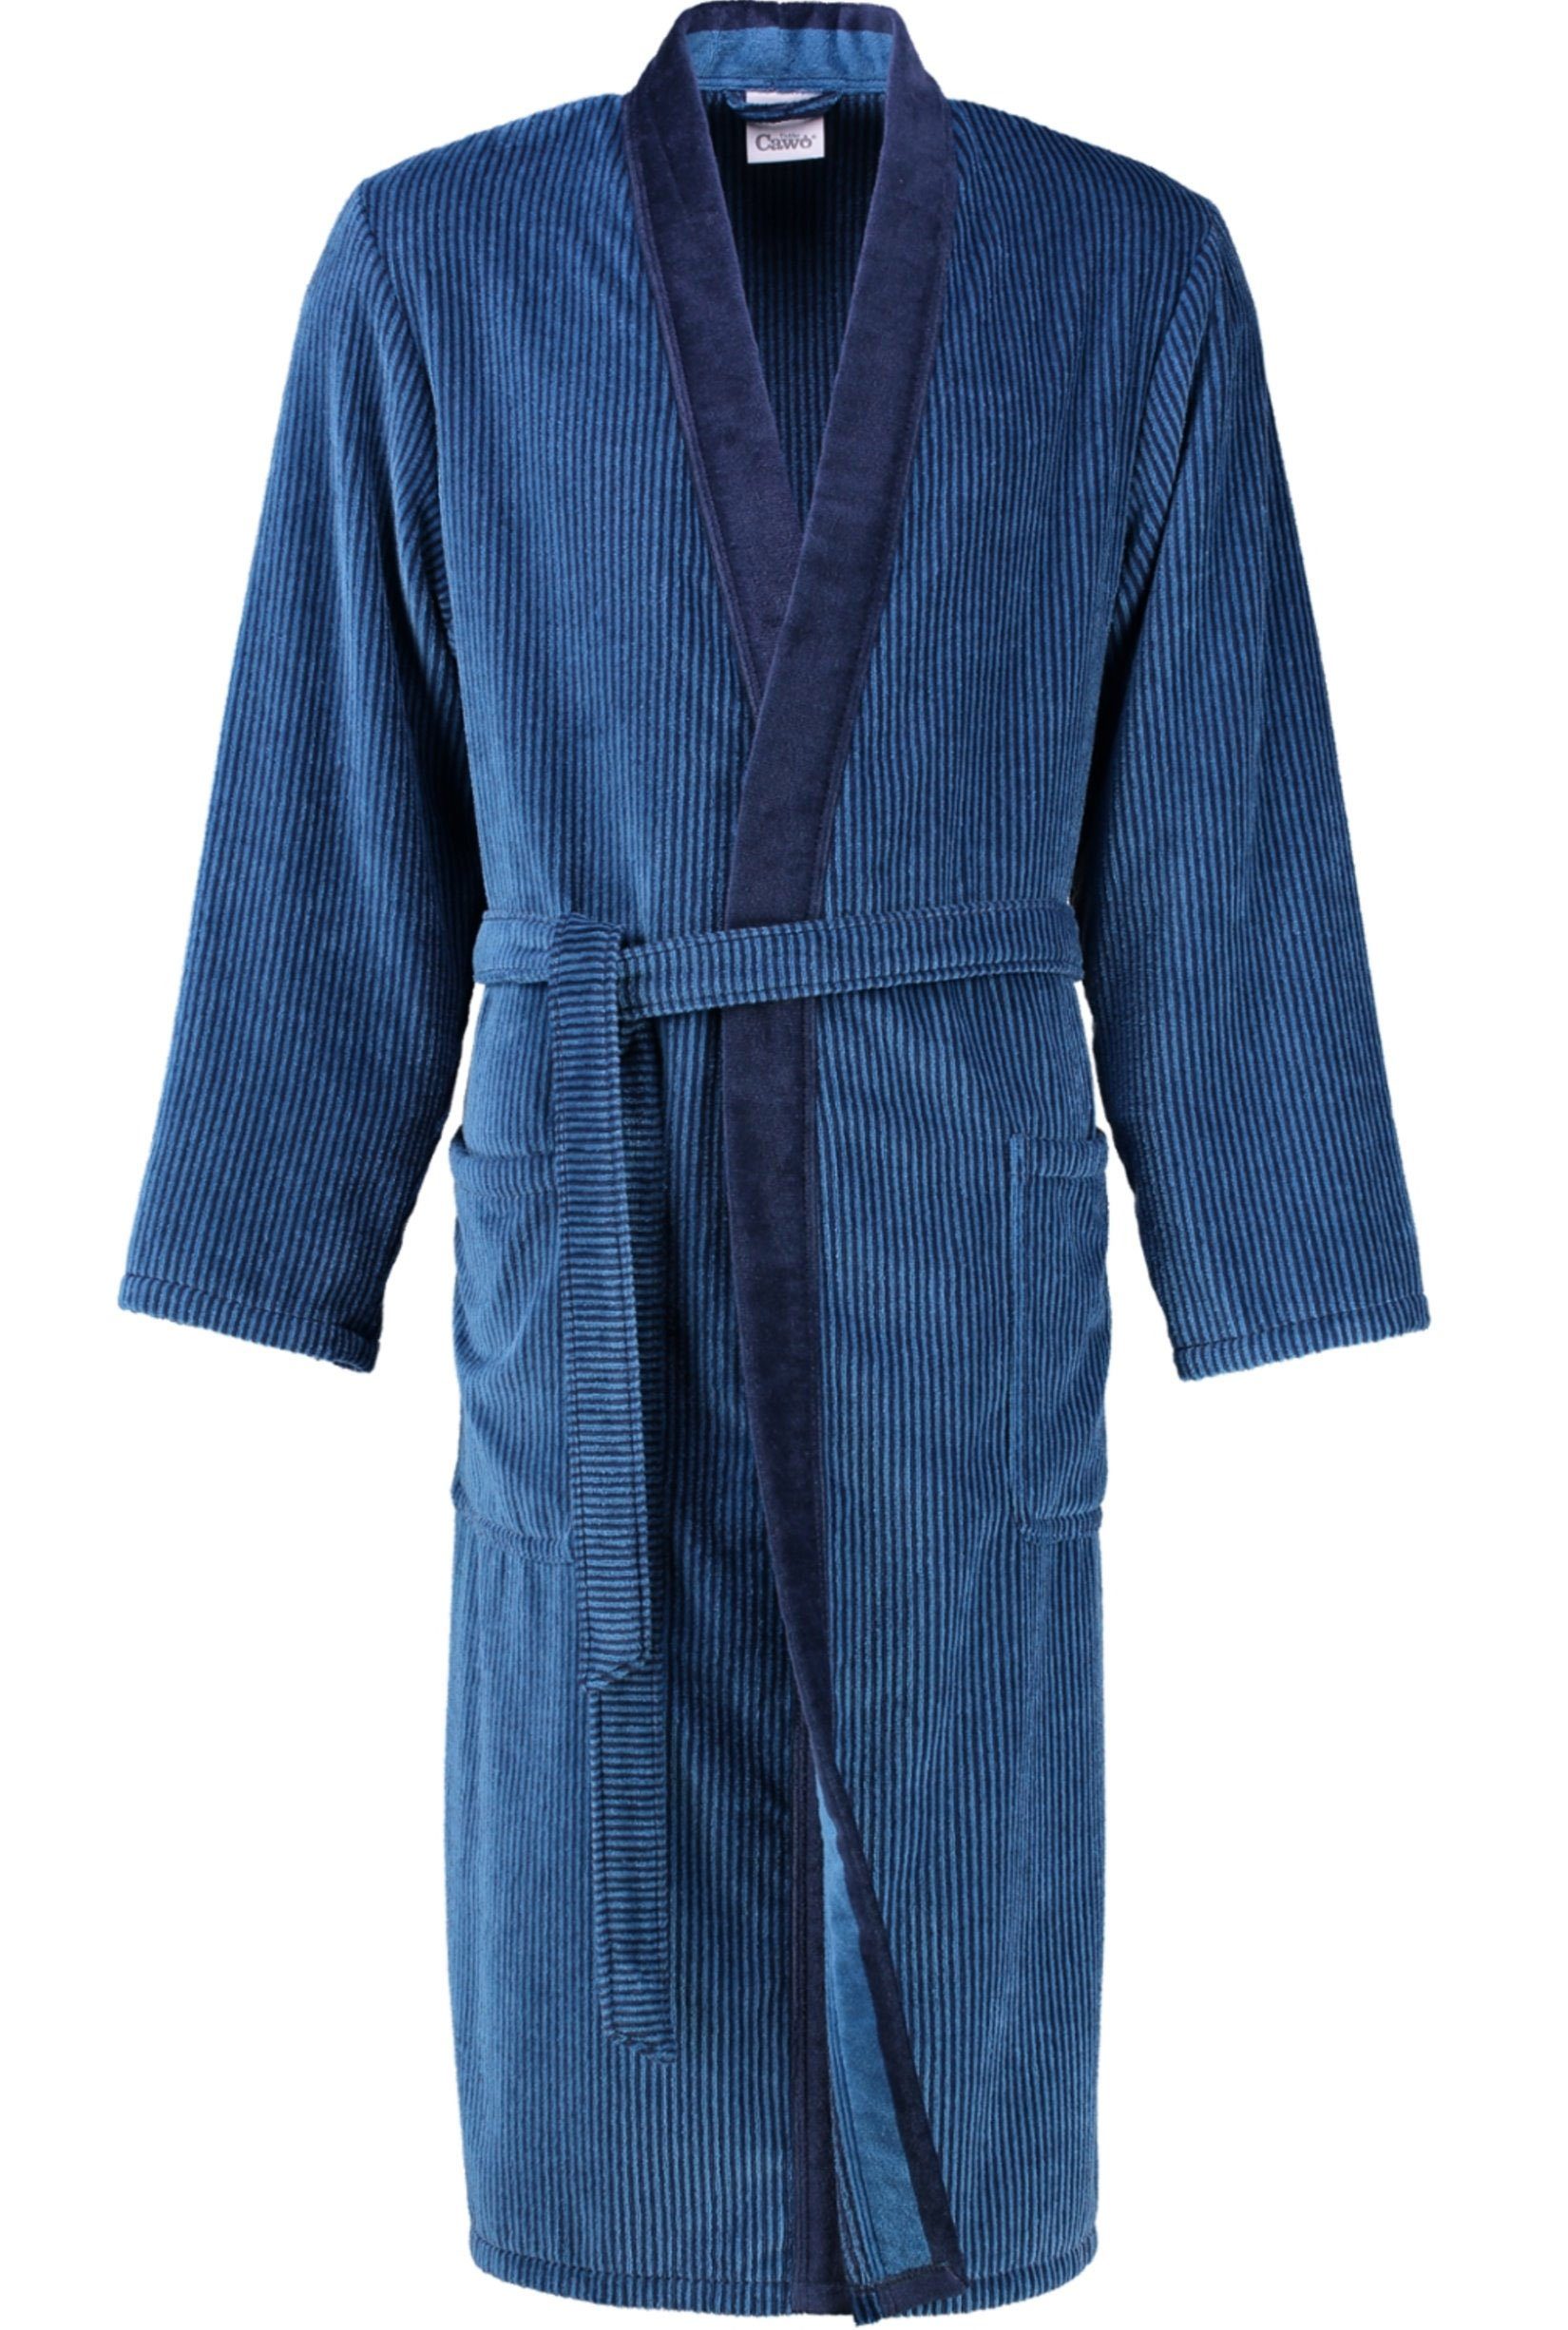 Cawö Herrenbademantel 5840, Langform, Walkvelours, Kimono-Kragen, Gürtel, Kimono Form blau